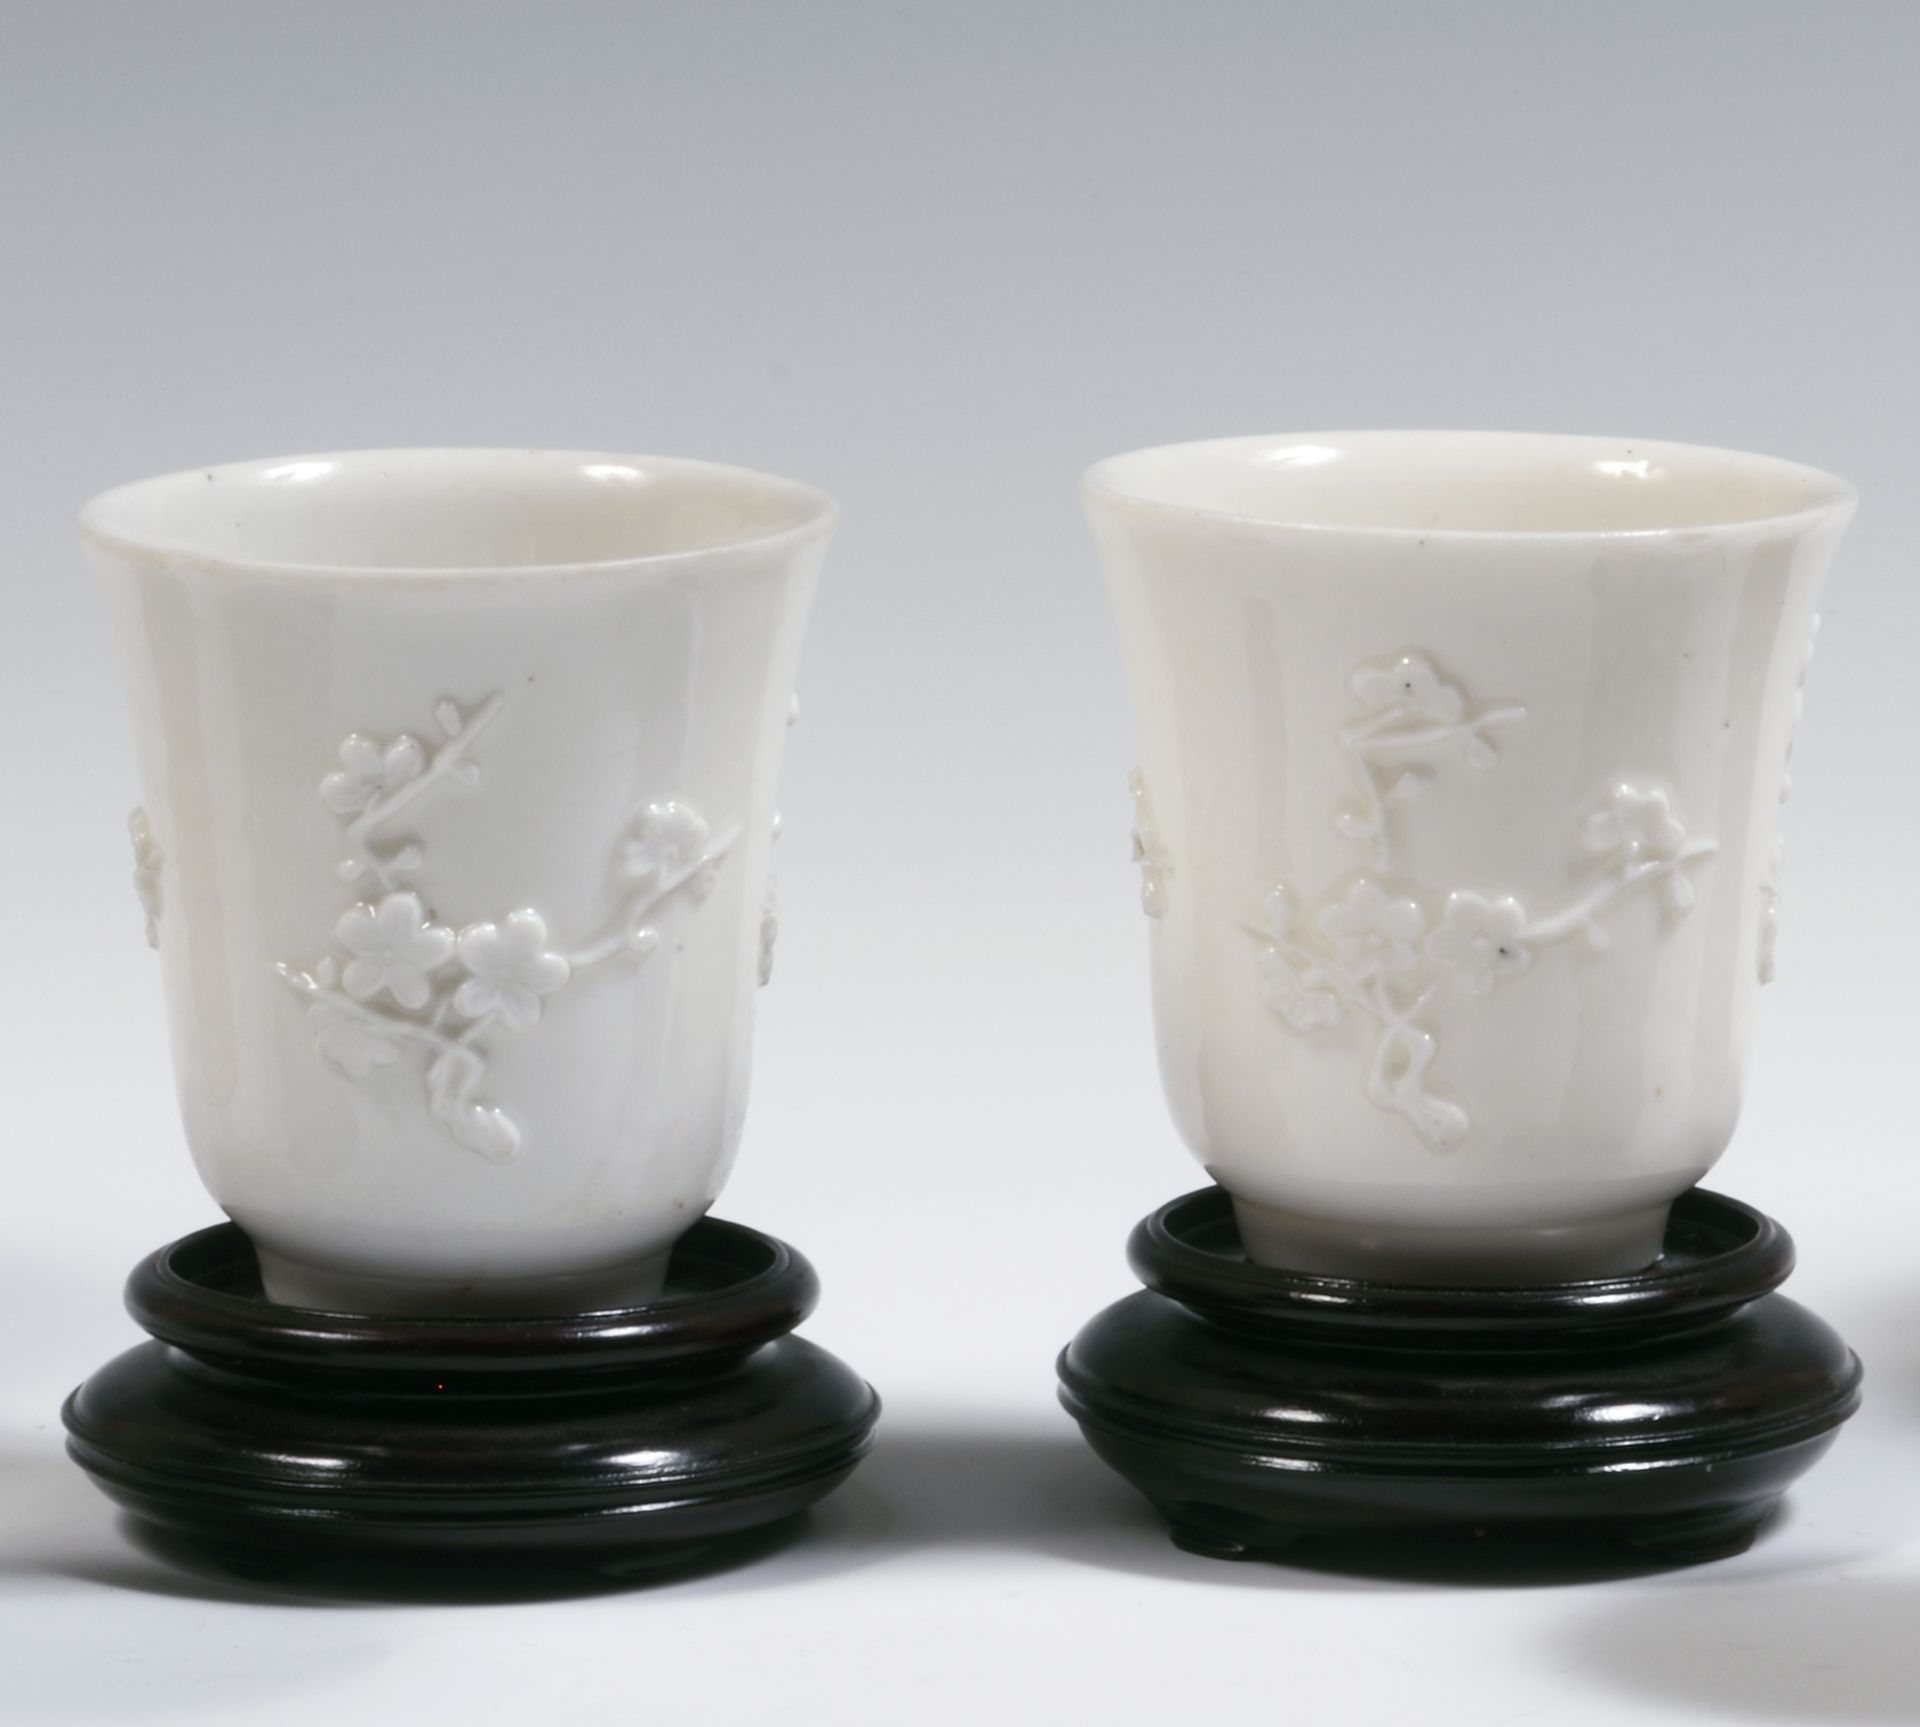 Null 
China

Zwei Tassen aus chinesisch-weißem Porzellan, verziert mit reliefier&hellip;